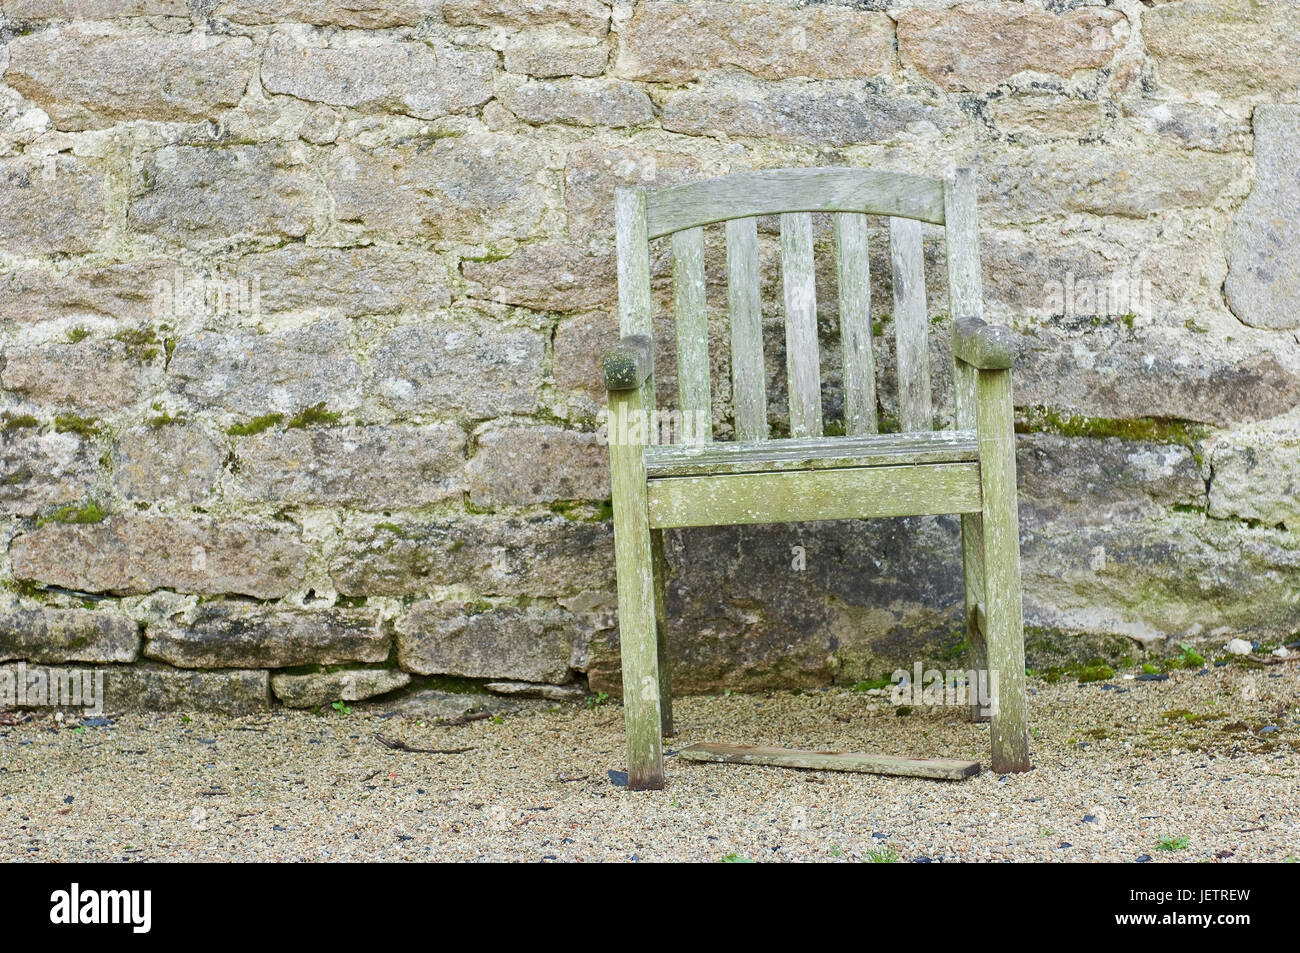 Rotting chair before a natural stone wall, Verrottender Stuhl vor einer Natursteinmauer Stock Photo